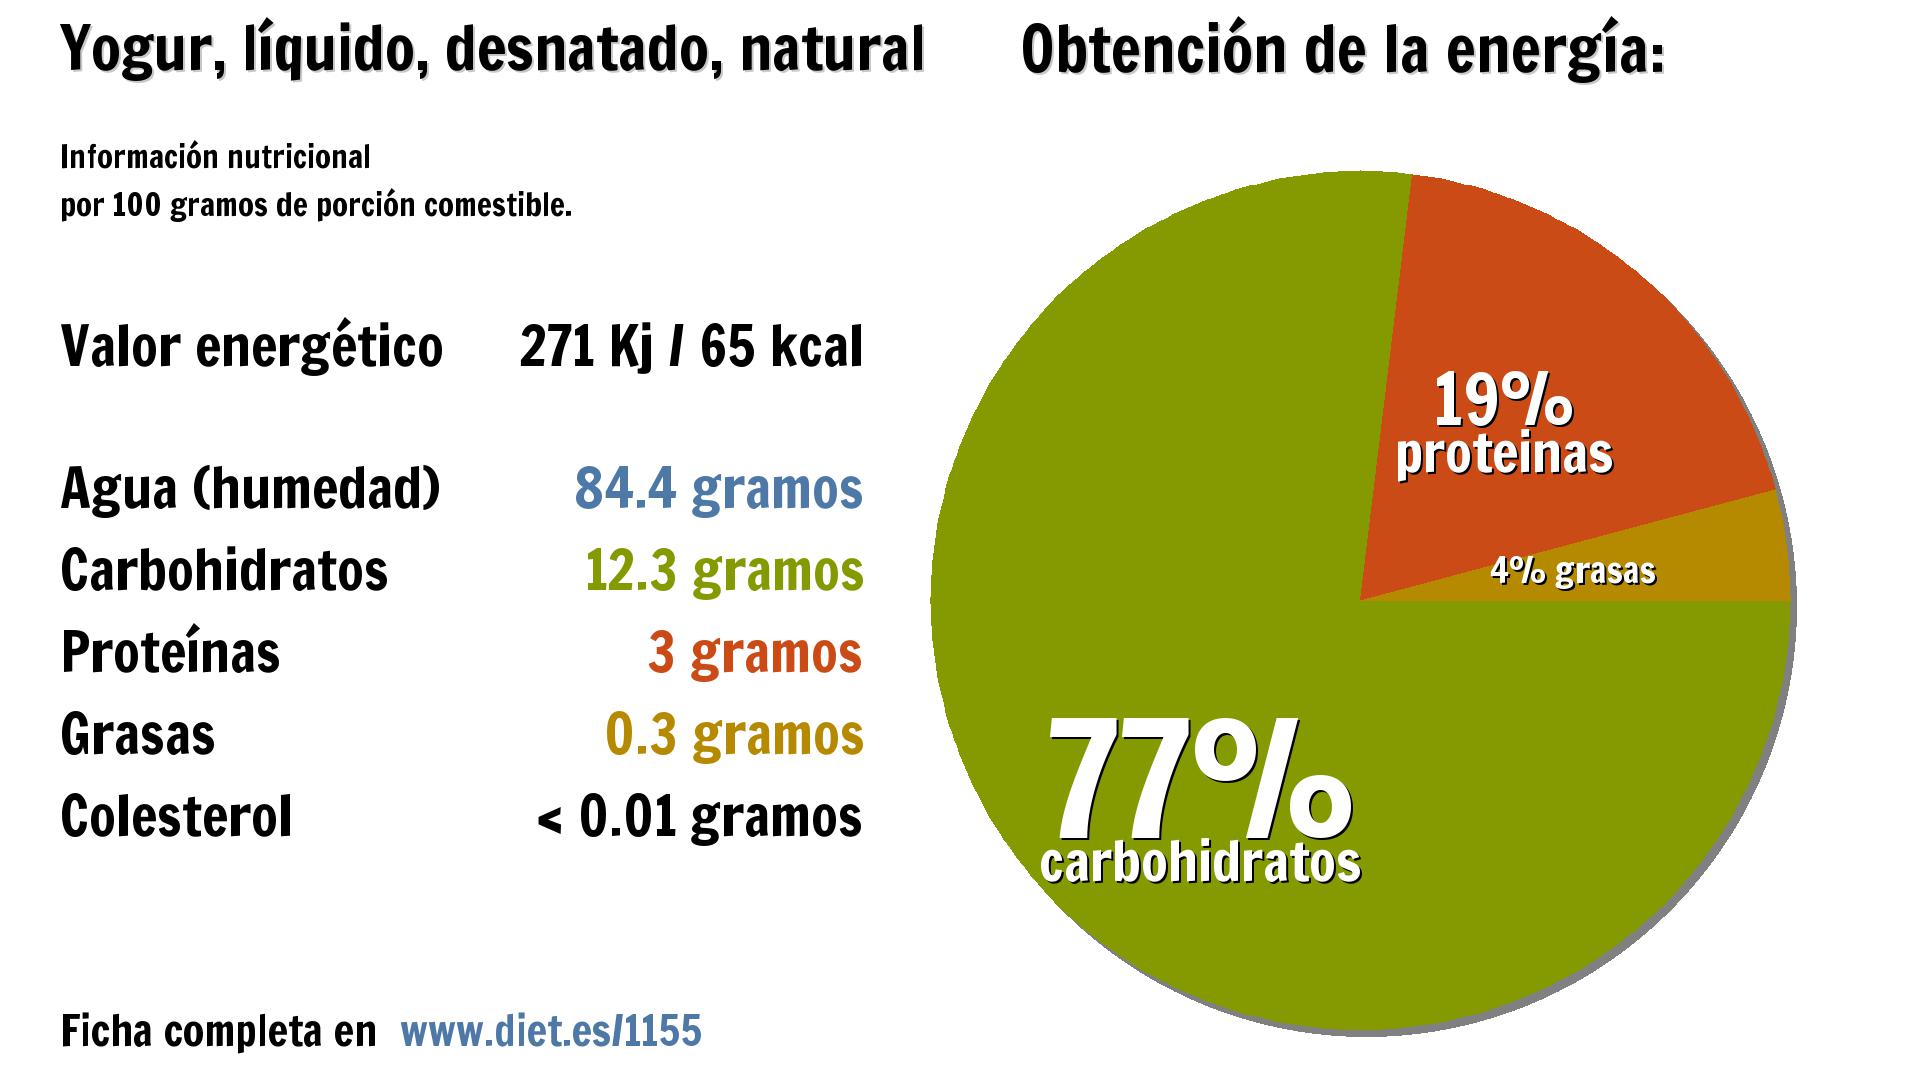 Yogur, líquido, desnatado, natural: energía 271 Kj, agua 84 g., carbohidratos 12 g. y proteínas 3 g.